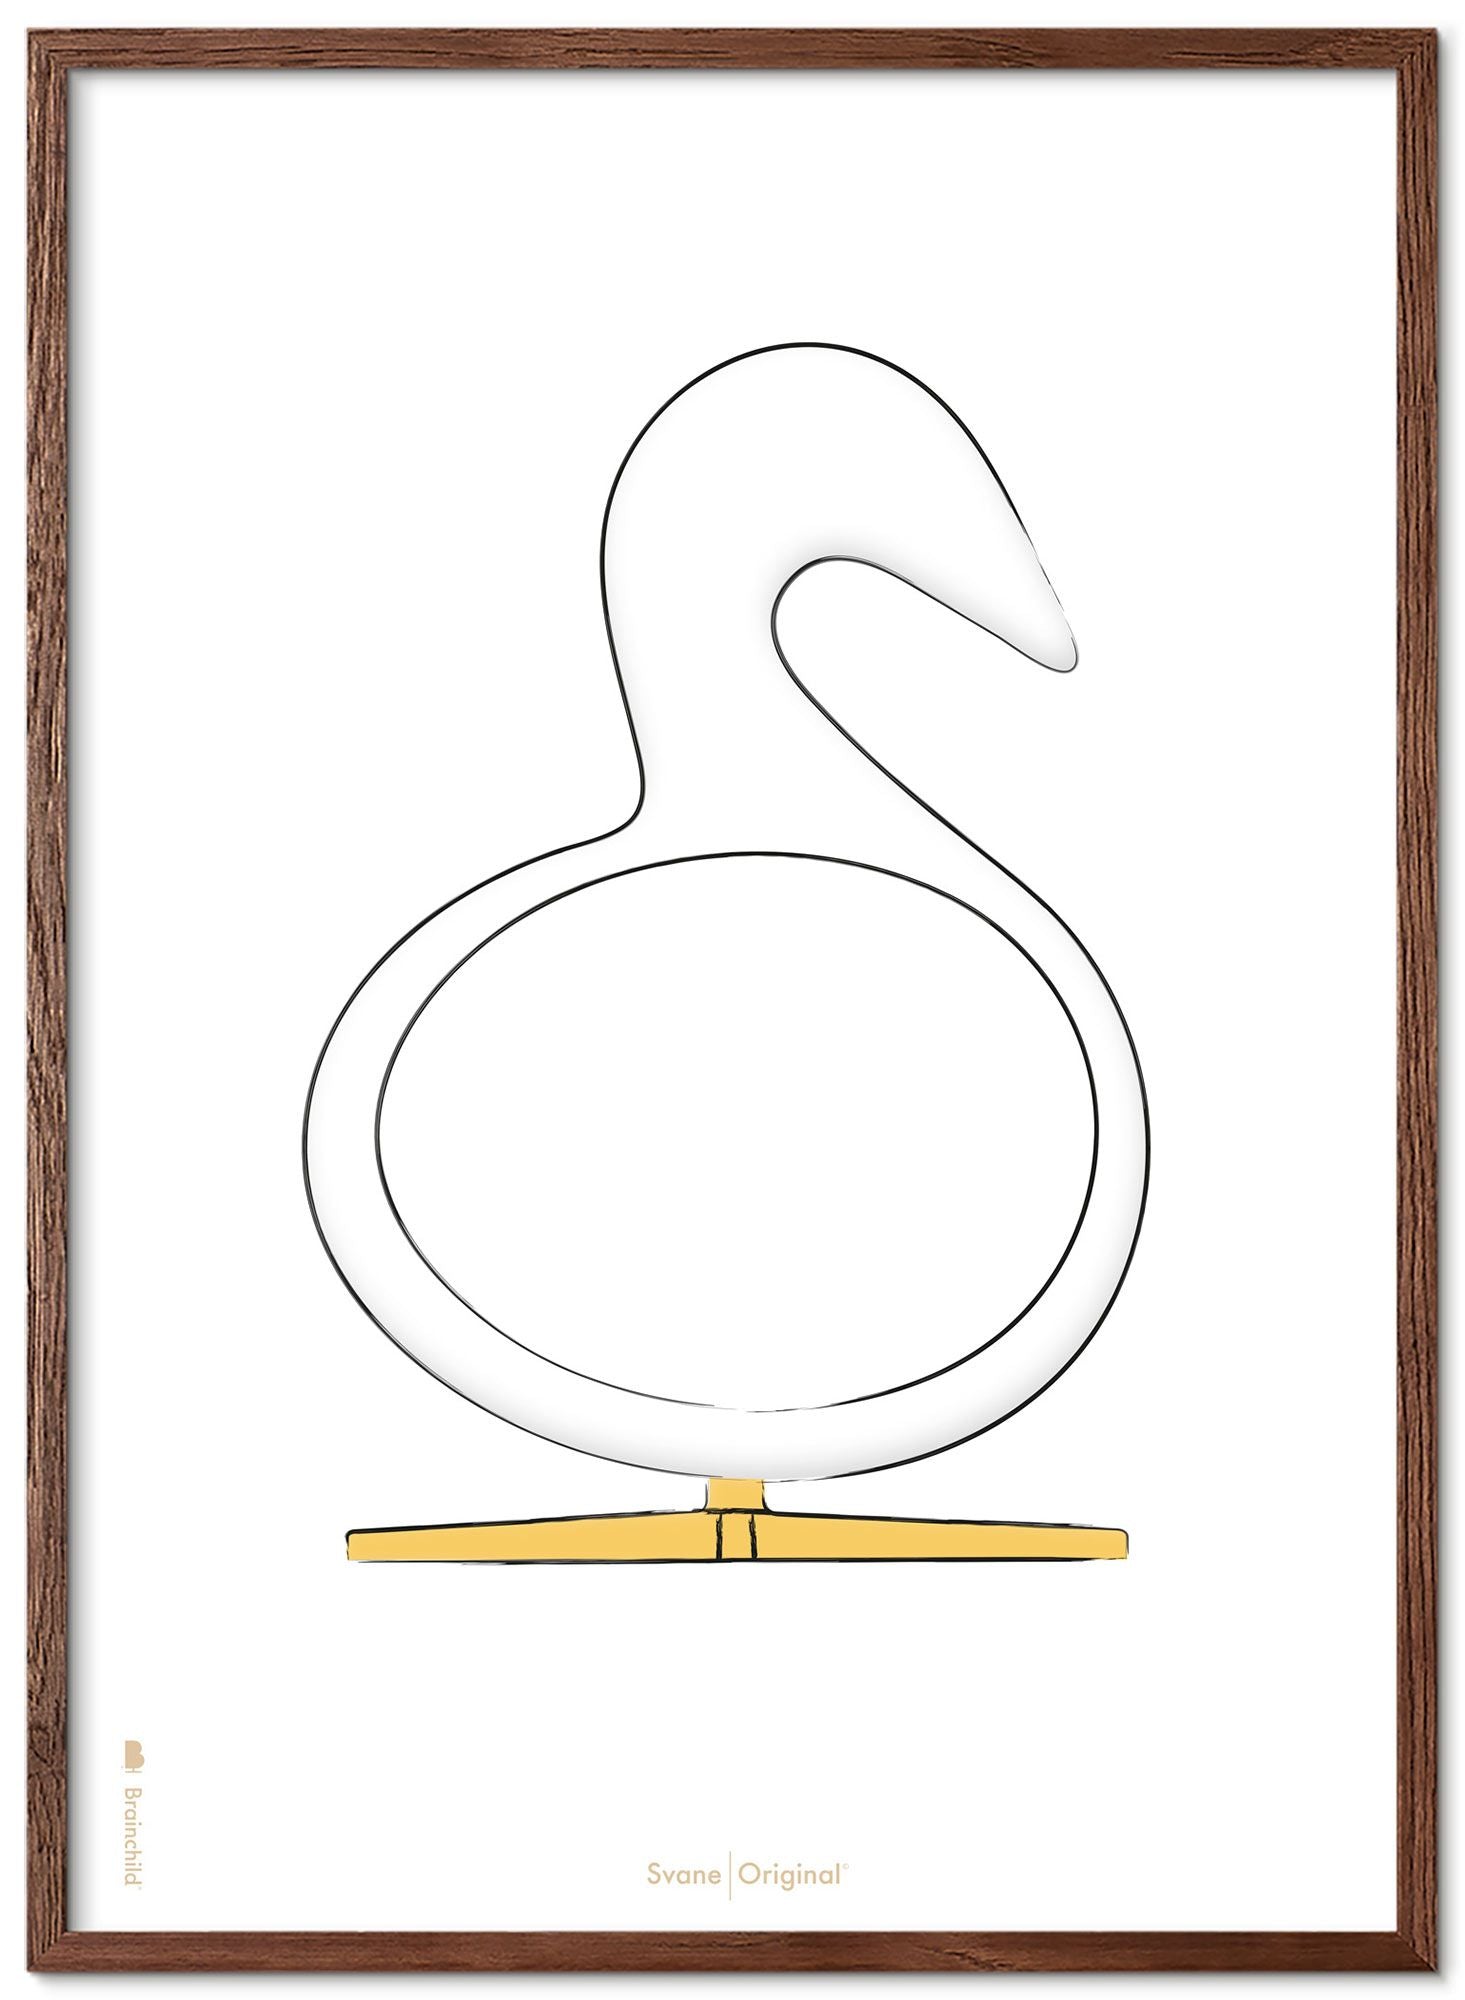 Marco de póster de boceto de diseño de Swan de creación hecha de madera oscura 70x100 cm, fondo blanco